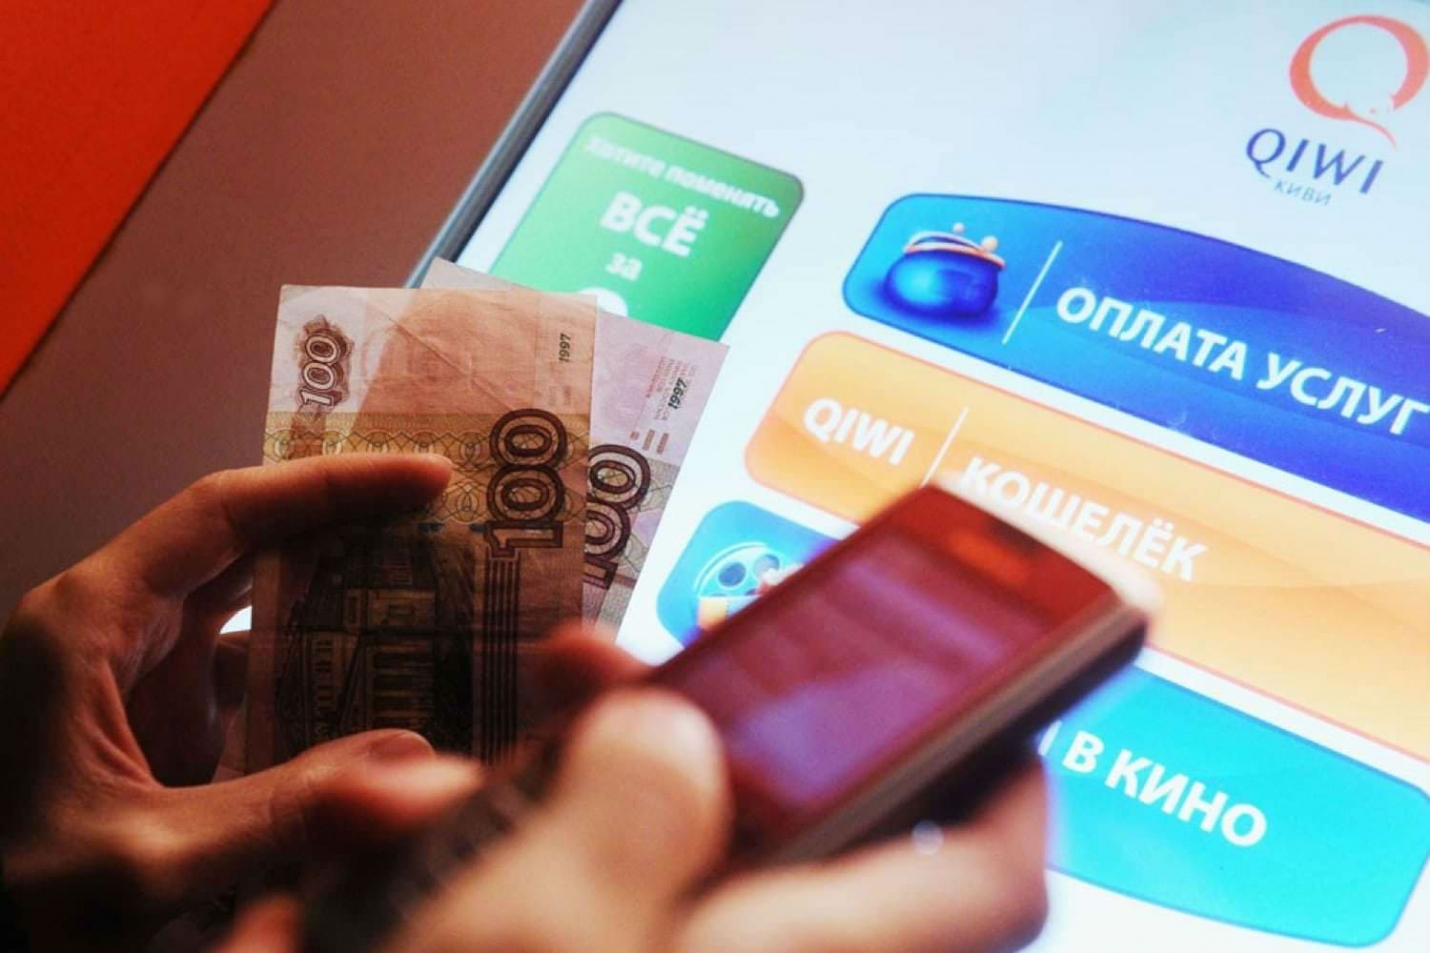 «Яндекс.Деньги» и Qiwi призвали упростить идентификацию владельцев кошельков